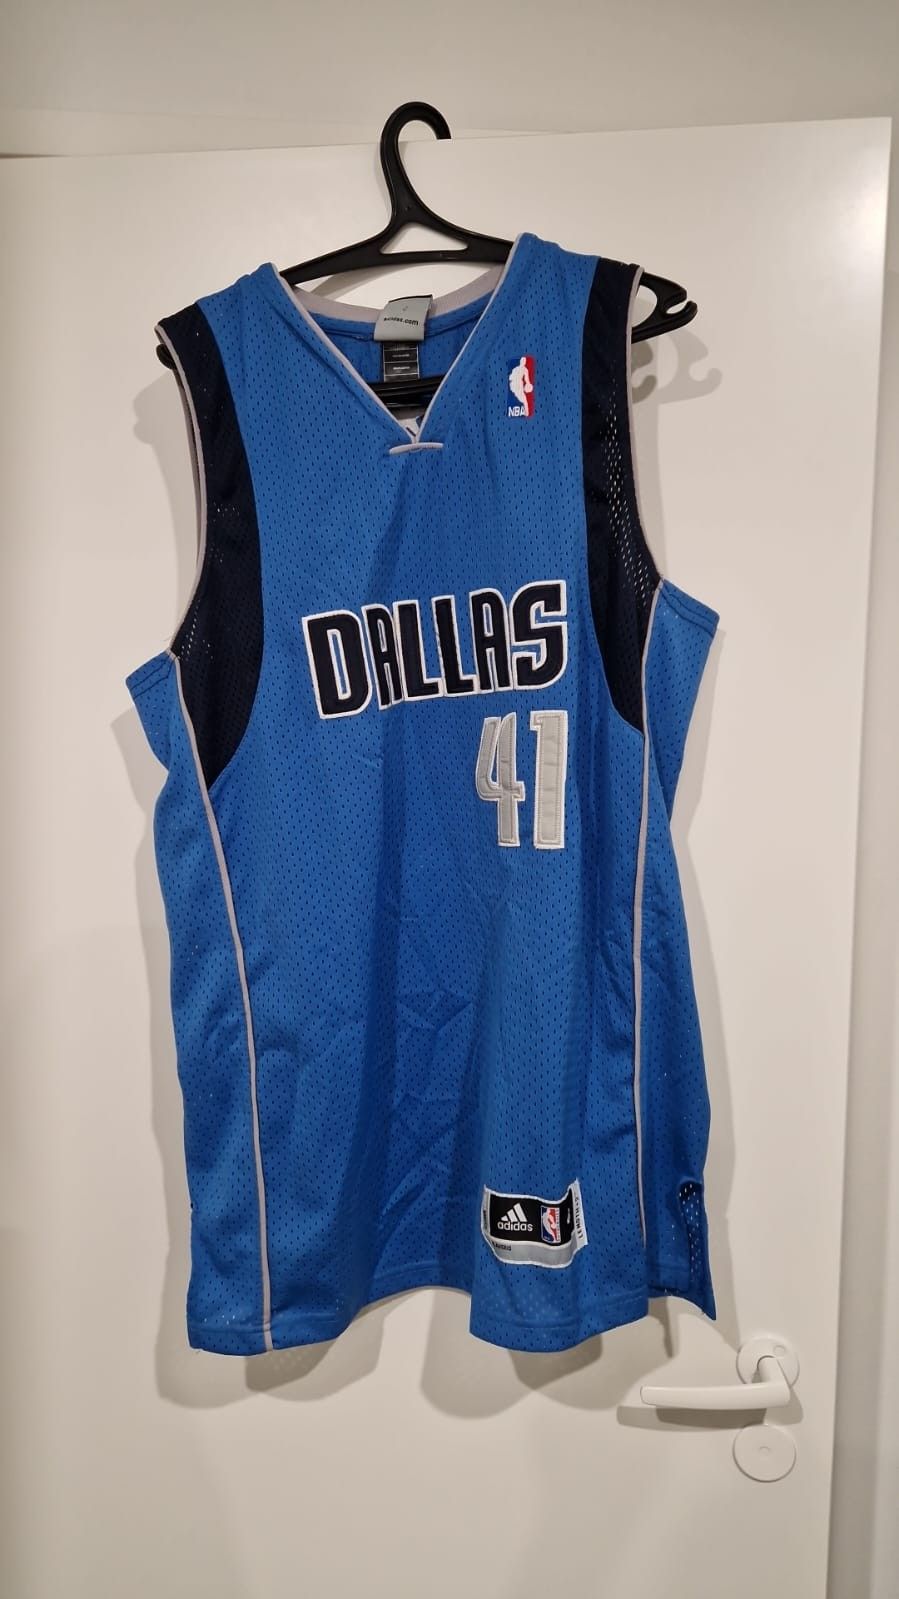 Uusi, aito käyttämätön NBA paita NBA storesta, Dallas Mavericks Dirk Nowitzki 41